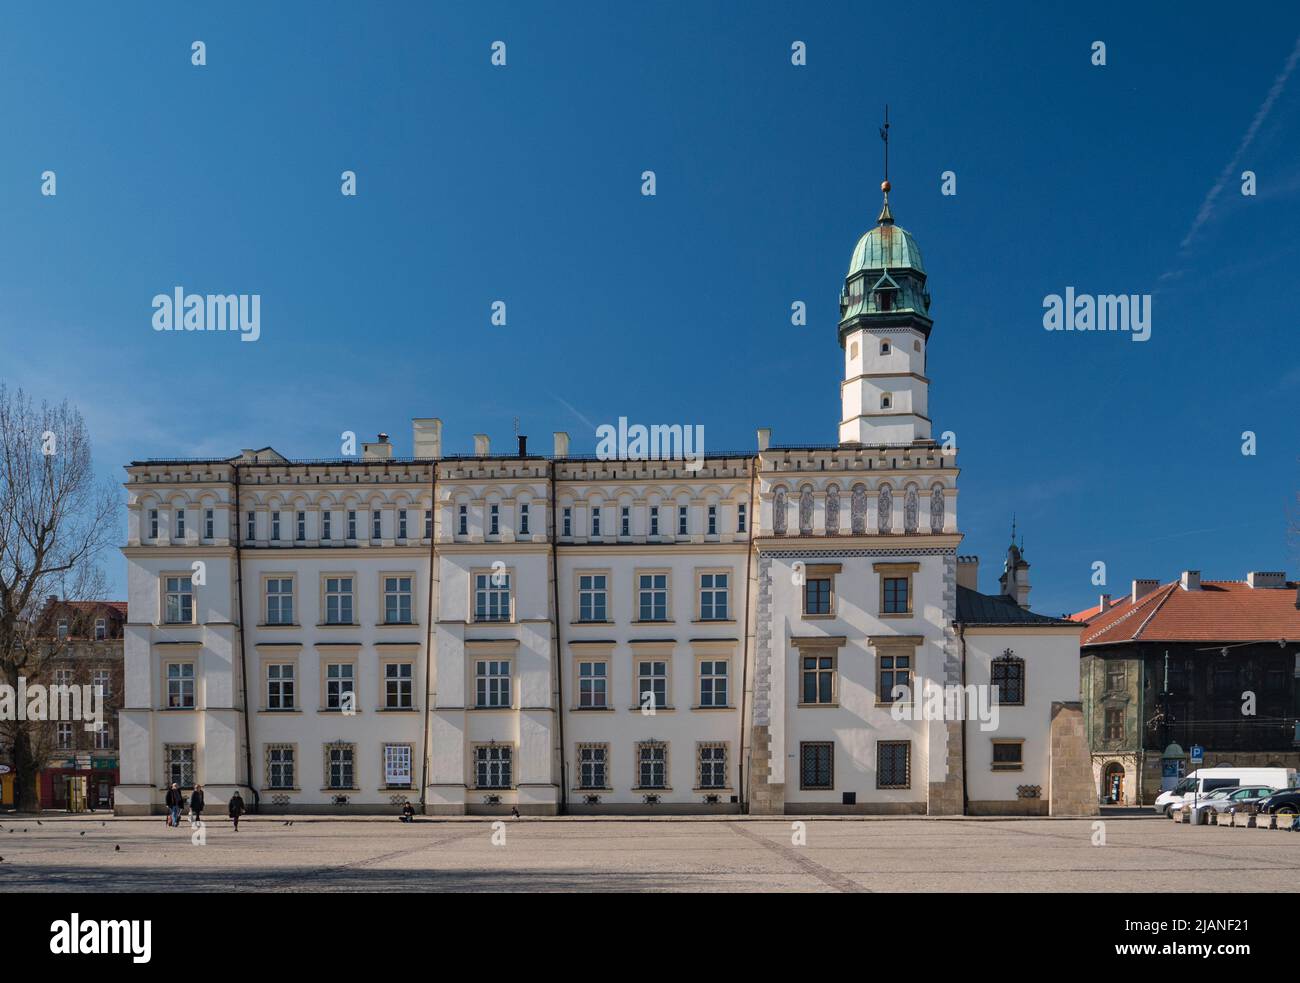 Ratusz na Placu Wolnica na krakowskim Kazimierzu. City Hall on Plac Wolnica in Krakow's Kazimierz district. Stock Photo